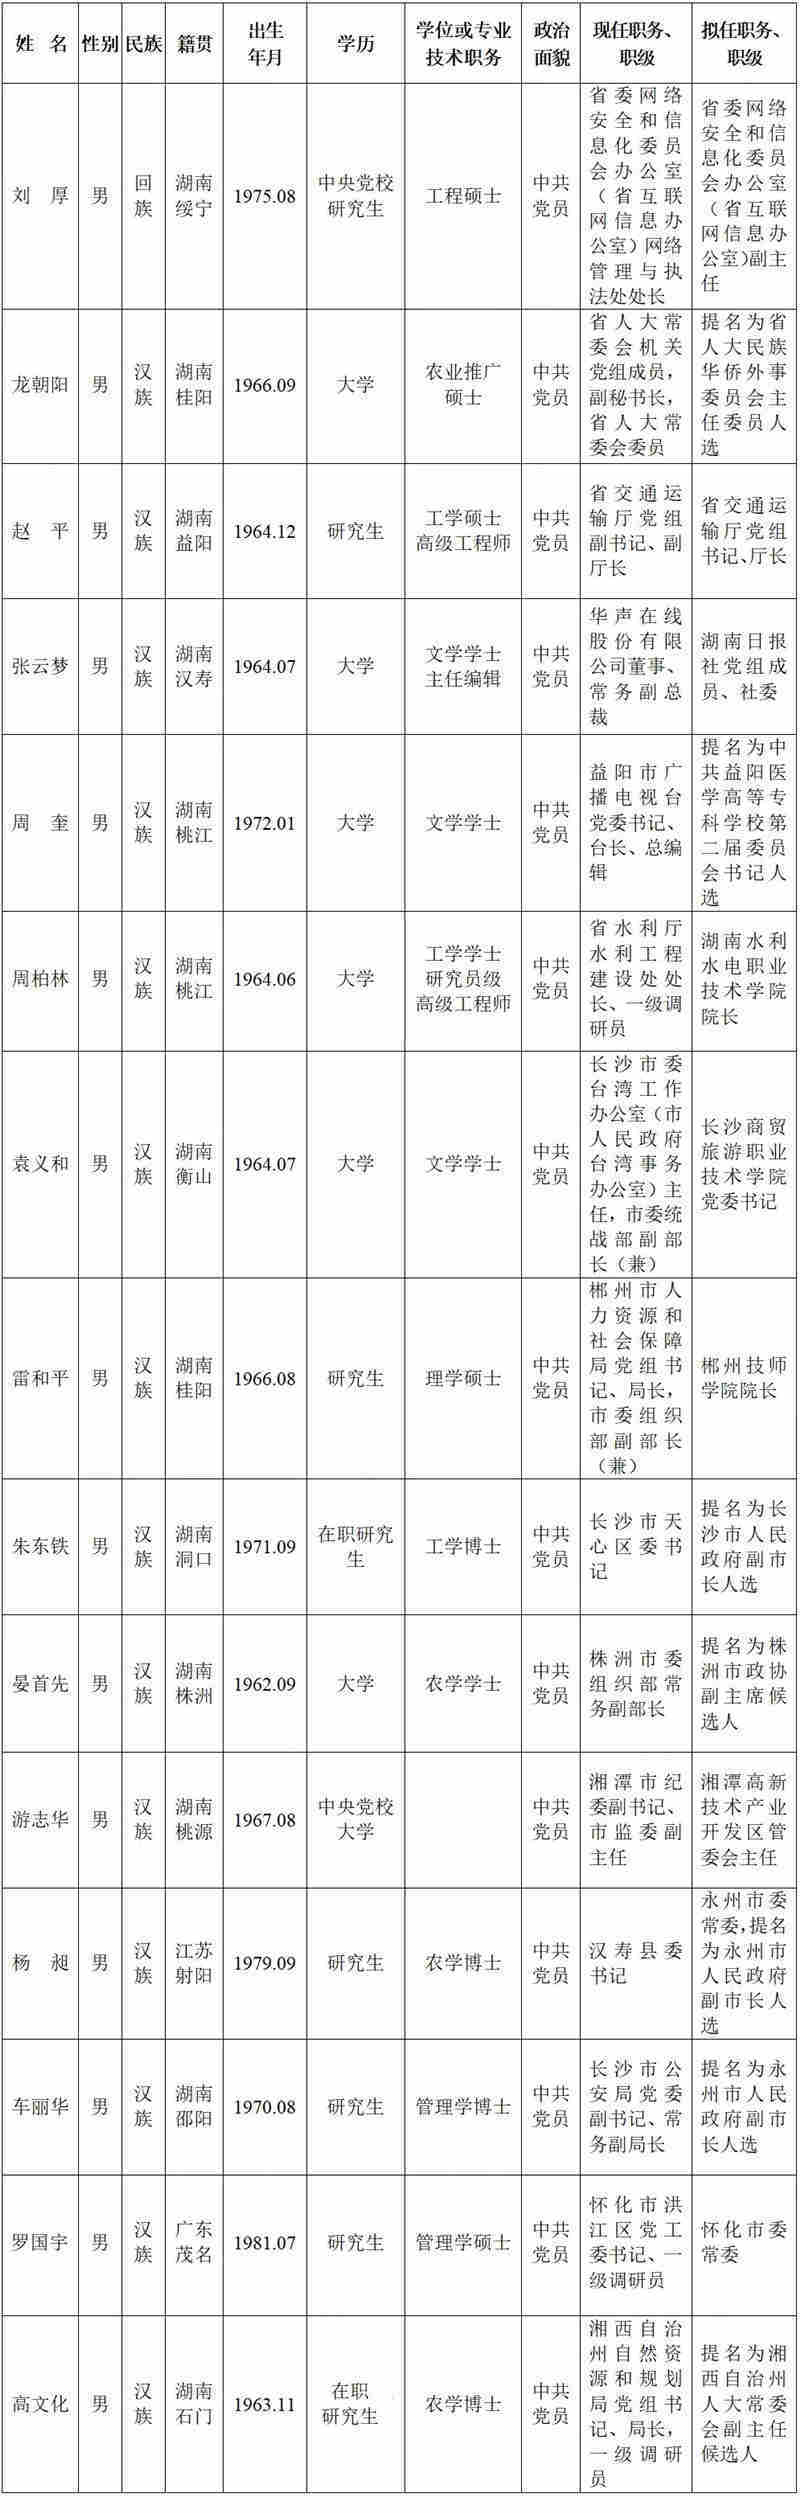 湖南15名省管干部任前公示“70后”占据6席